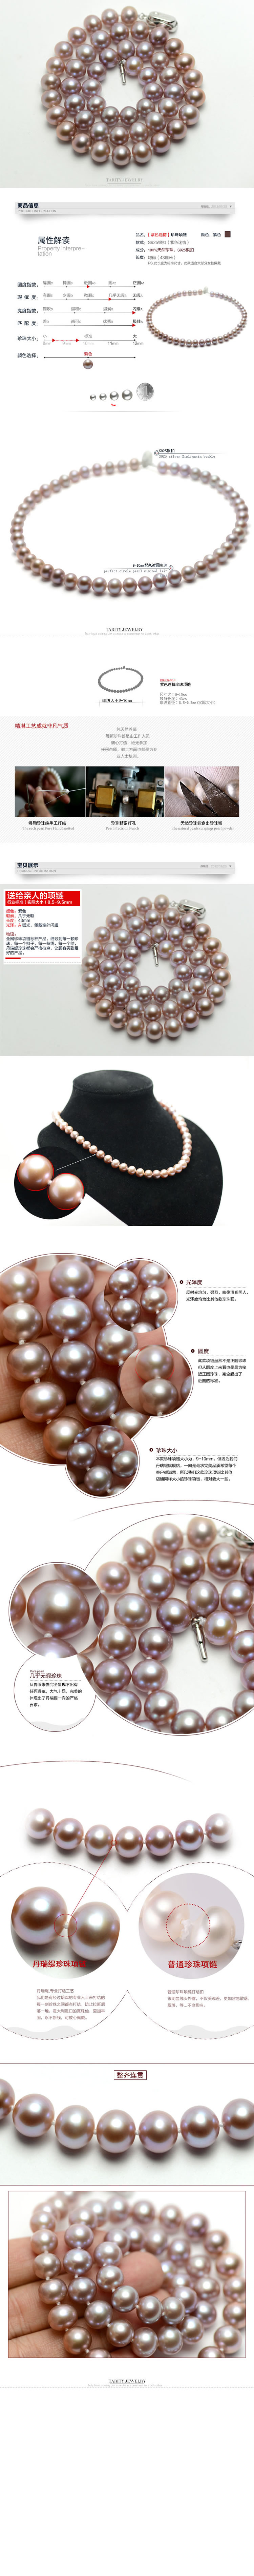 珍珠项链手饰珠宝玉器描述